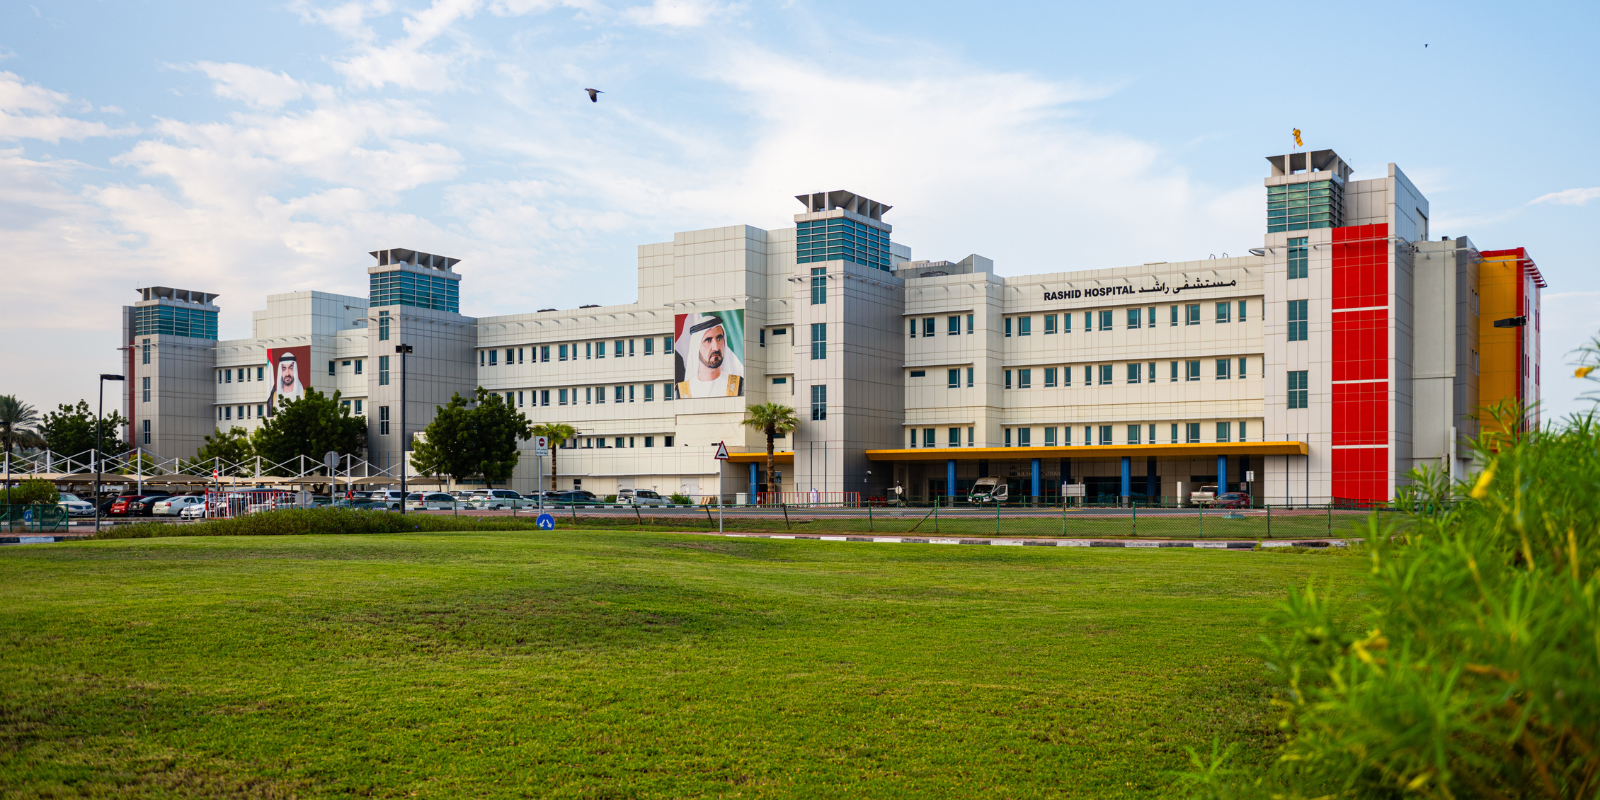 Rashid Hospital